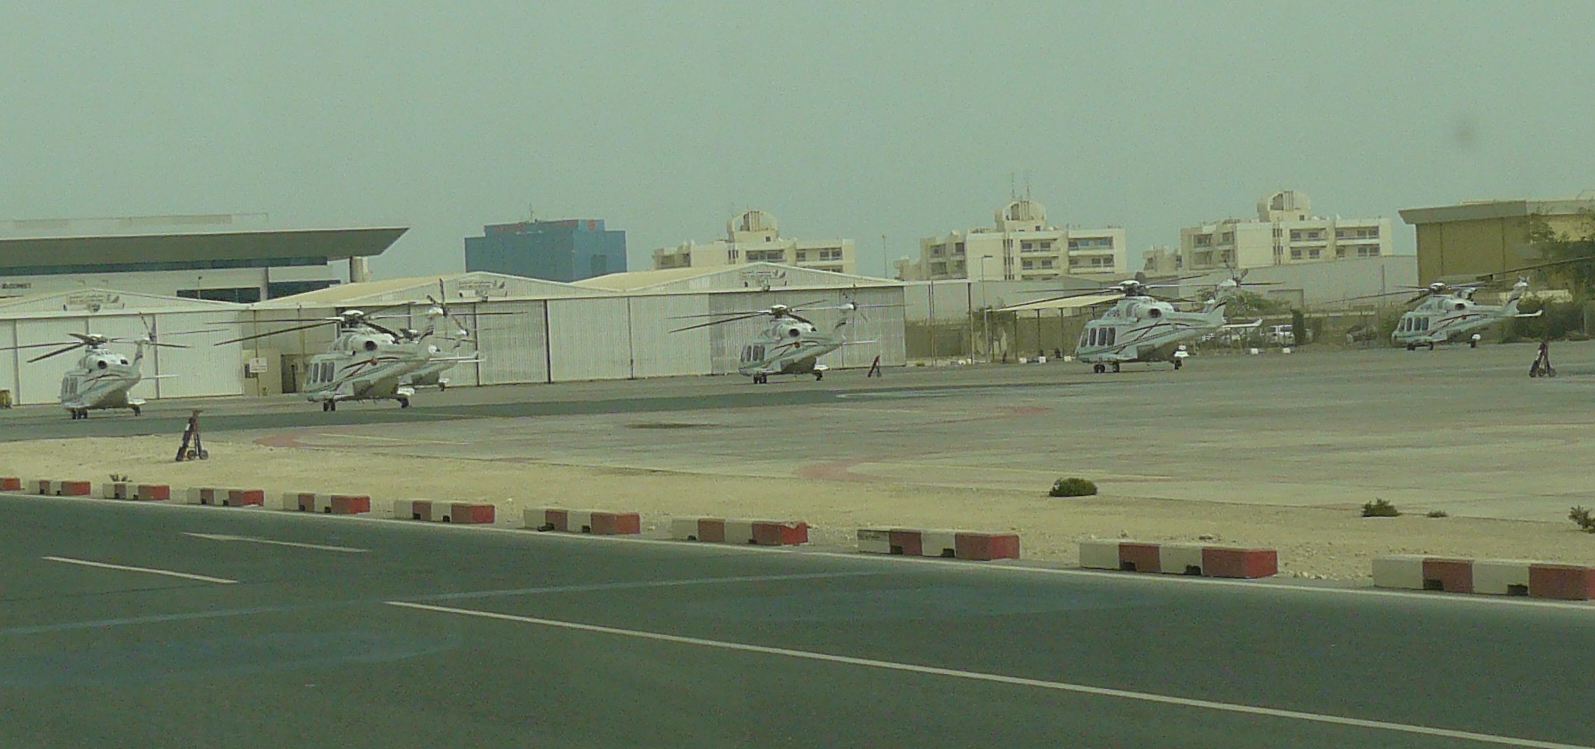 Bérelhető helikopterek bőven parkolnak a reptéren, csak legyen hová leszállniuk a városban